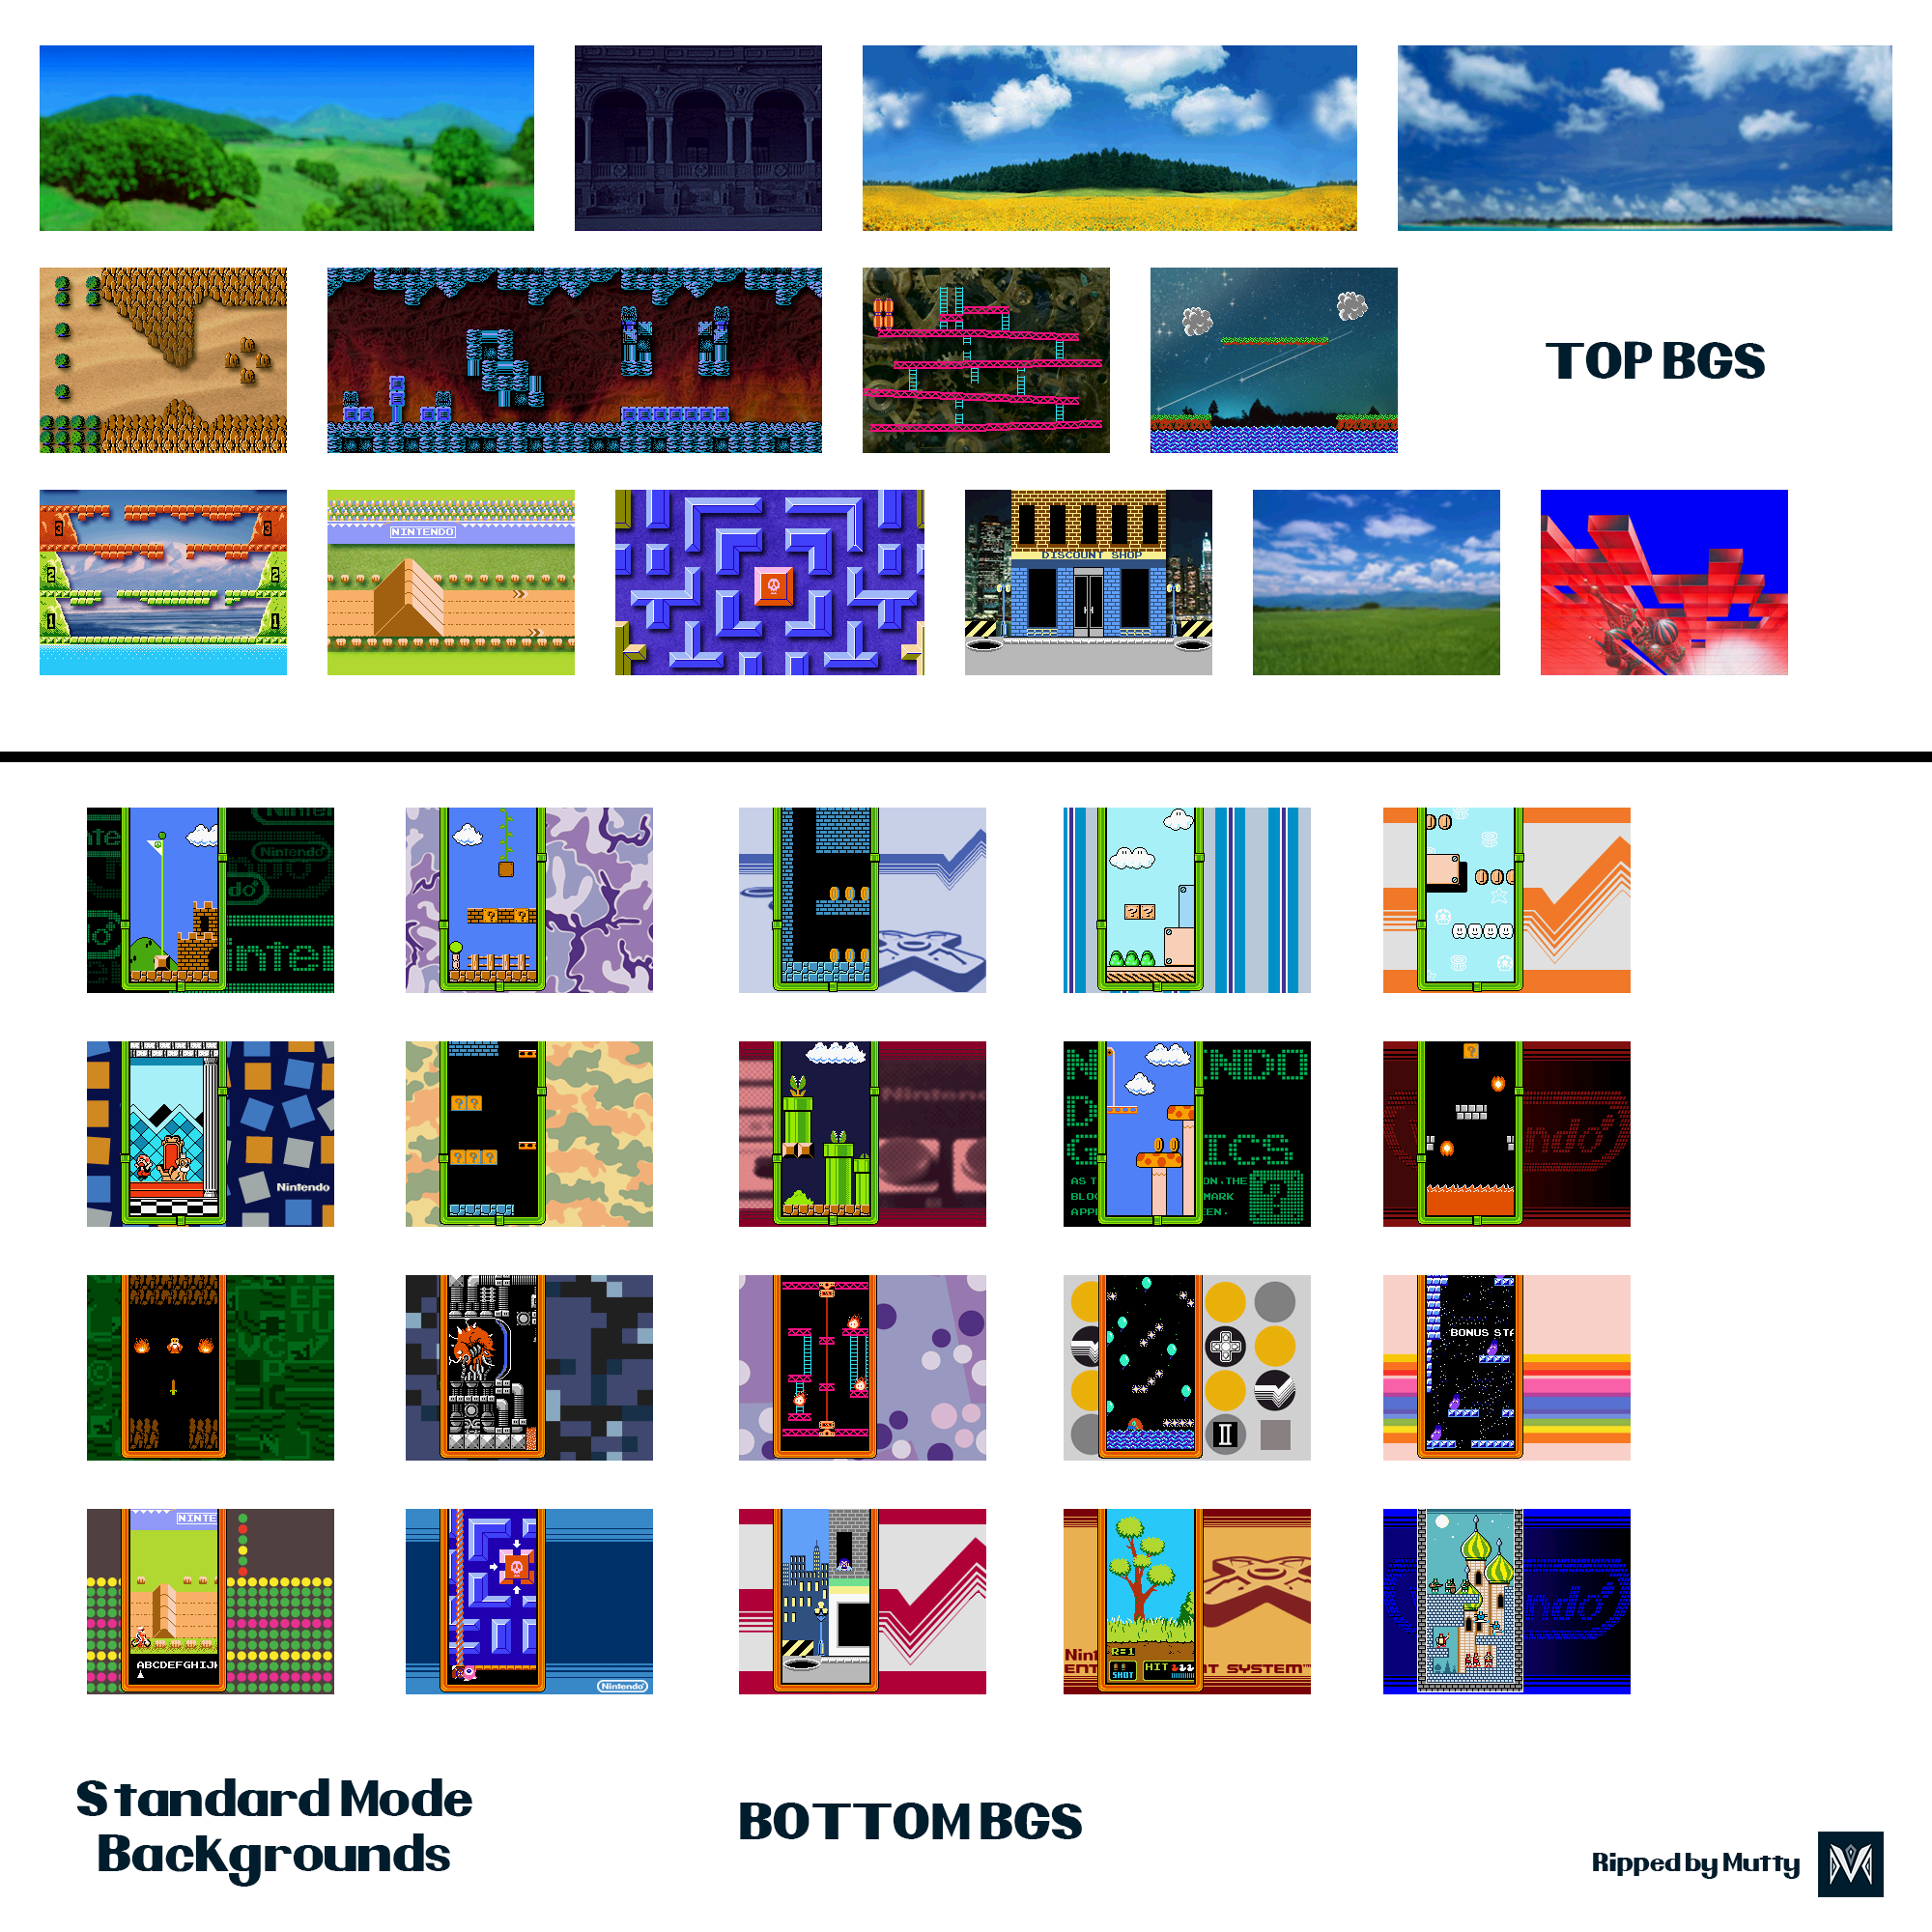 Tetris DS - Standard Mode - Backgrounds